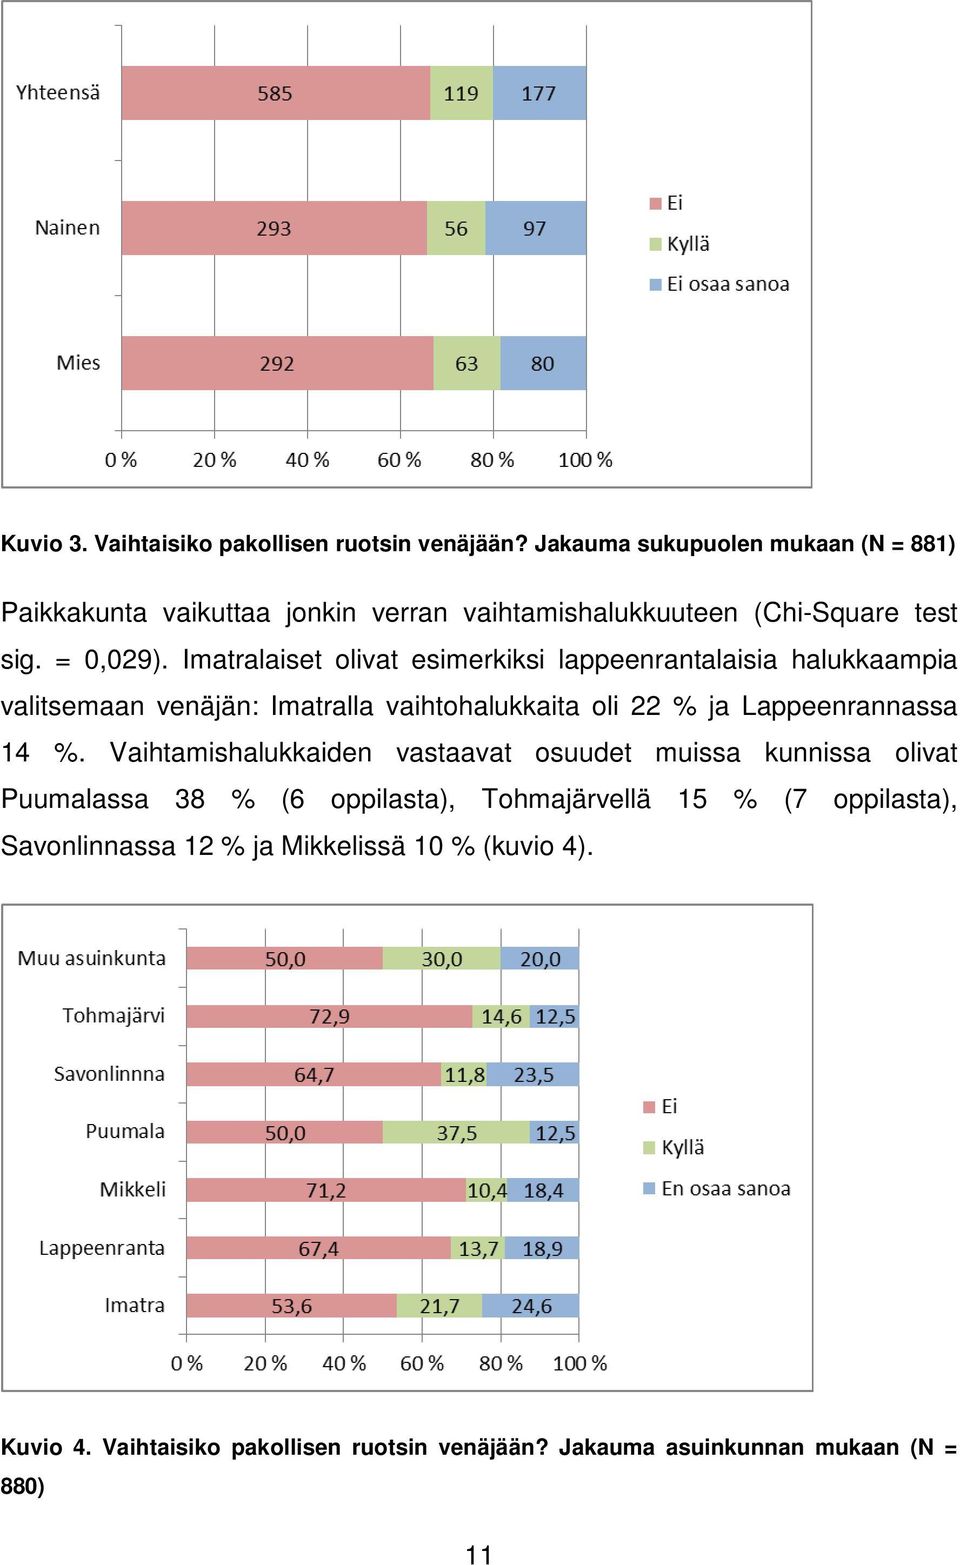 Imatralaiset olivat esimerkiksi lappeenrantalaisia halukkaampia valitsemaan venäjän: Imatralla vaihtohalukkaita oli 22 % ja Lappeenrannassa 14 %.